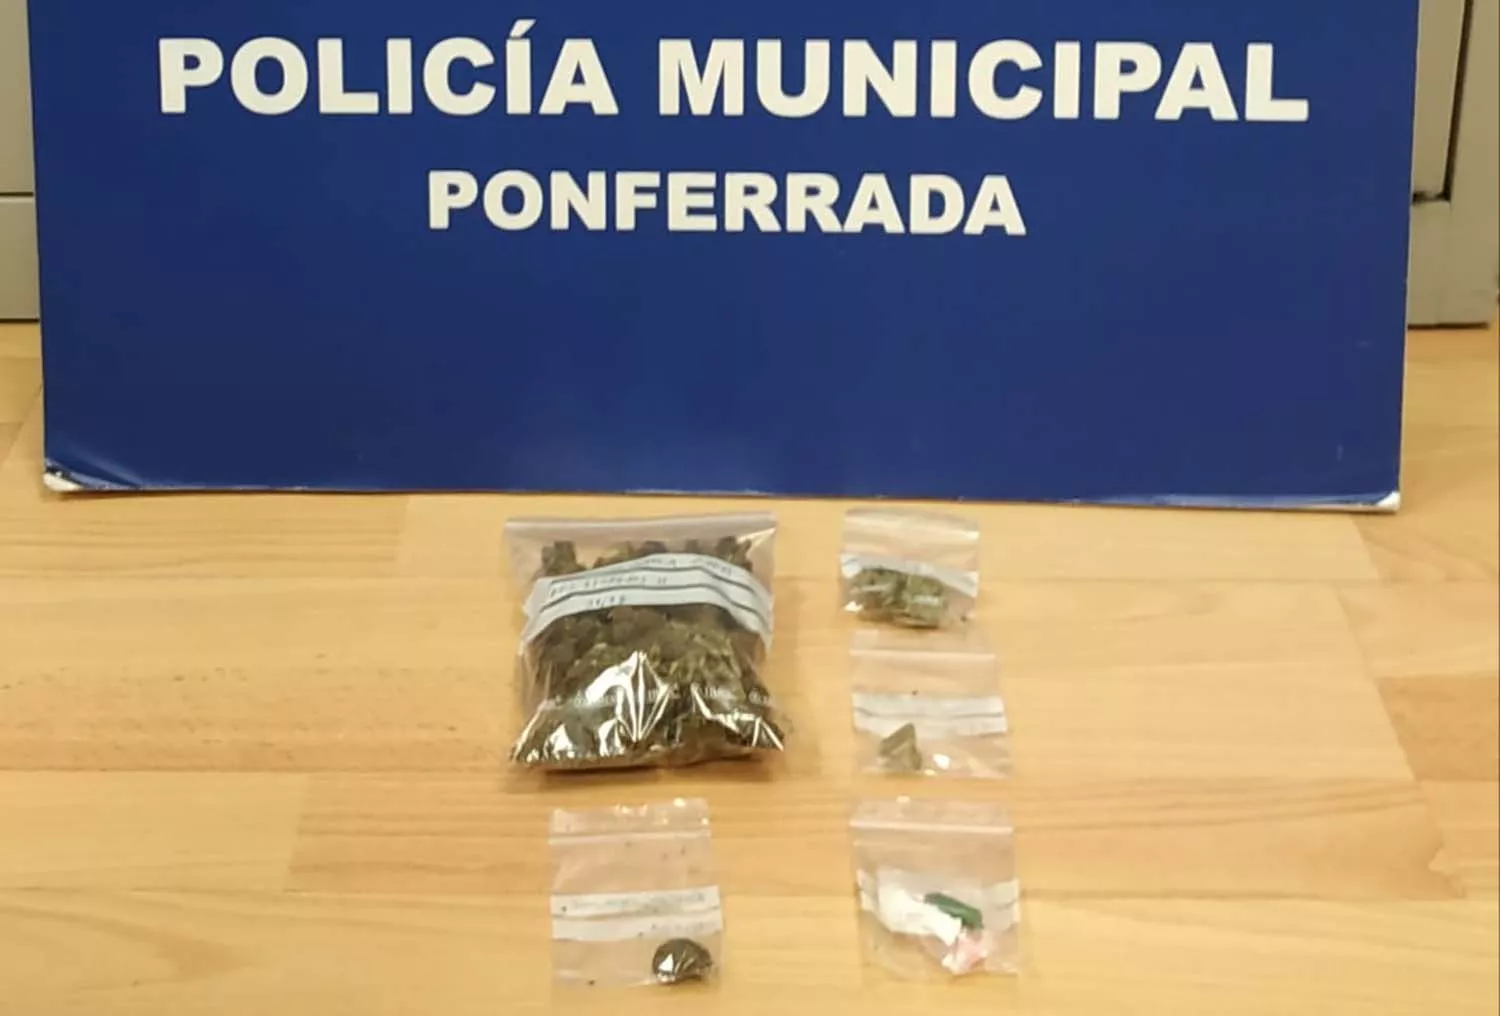 La Policía de Ponferrada realiza varias intervenciones que finalizan con la incautación de marihuana y cocaína | Imagen: Policía de Ponferrada